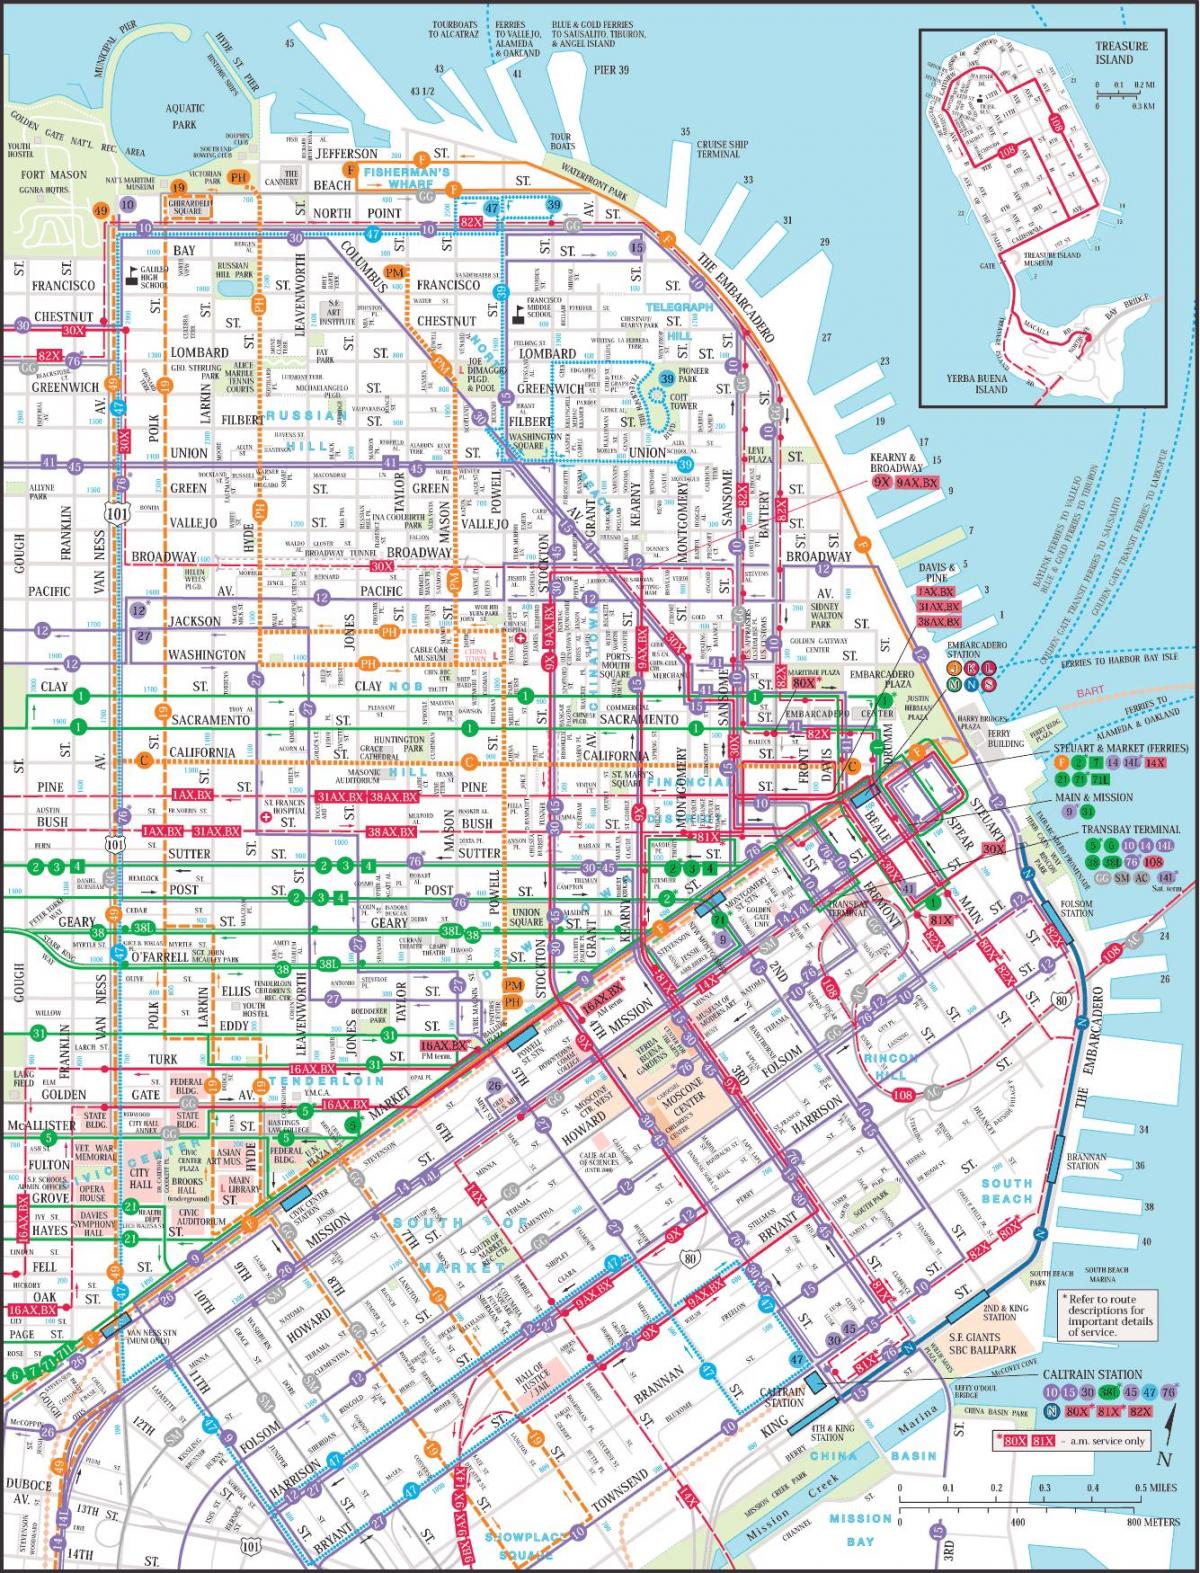 San Francisco transportu publicznego mapie